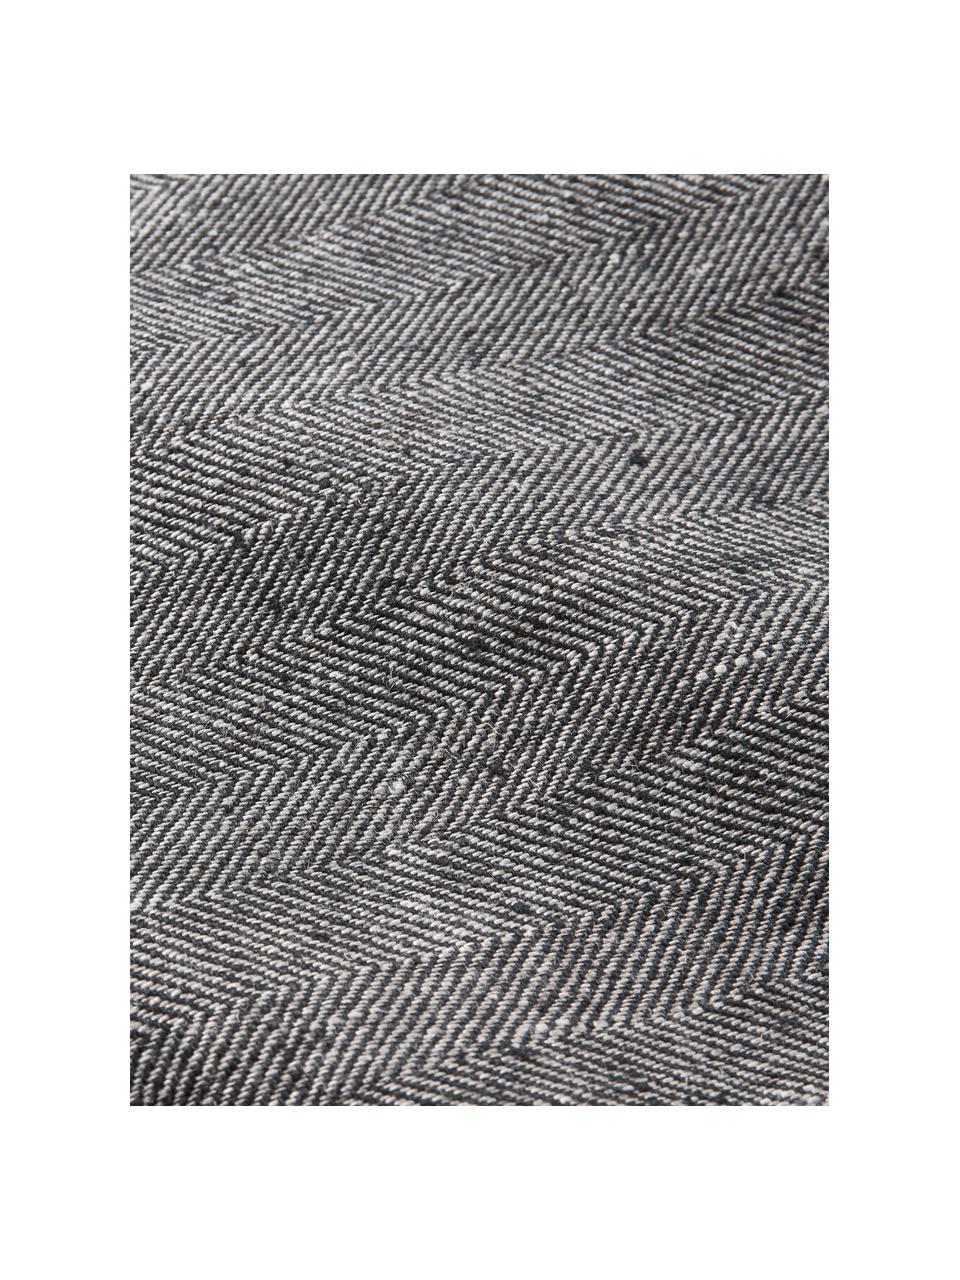 Bieżnik z lnu Audra, 100% len, Czarny, biały, S 46 x D 147 cm